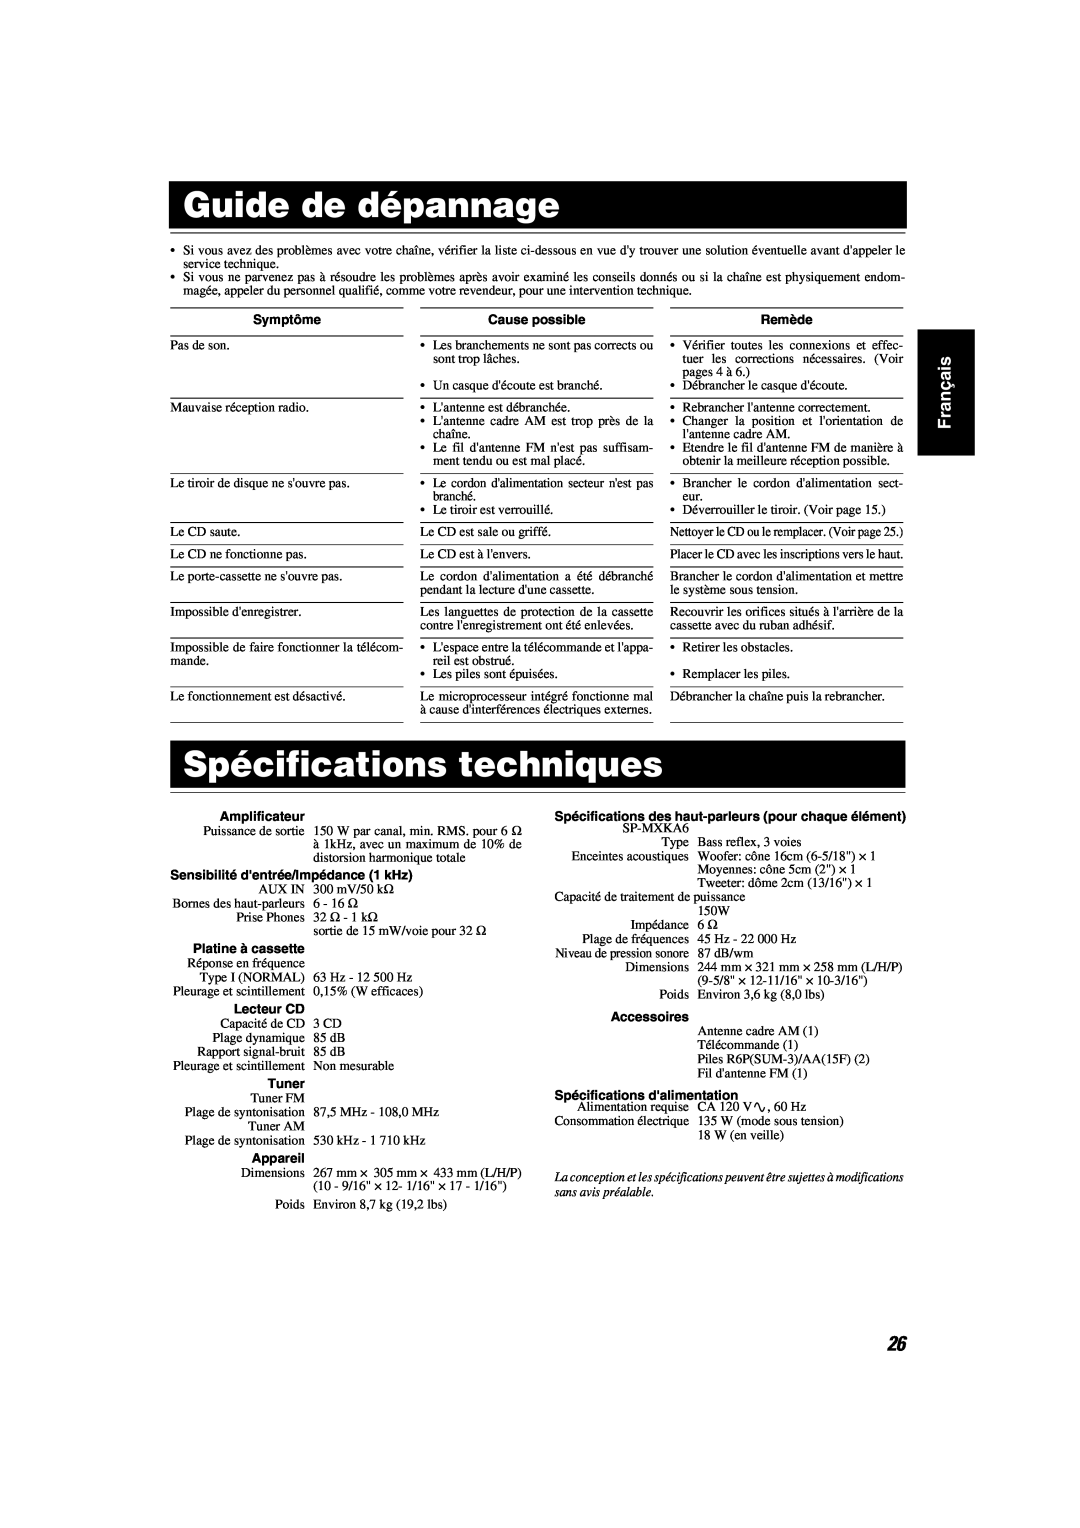 JVC MX-KA6 Guide de dépannage, Spécifications techniques, Français, Symptôme, Cause possible, Remède, Amplificateur, Tuner 